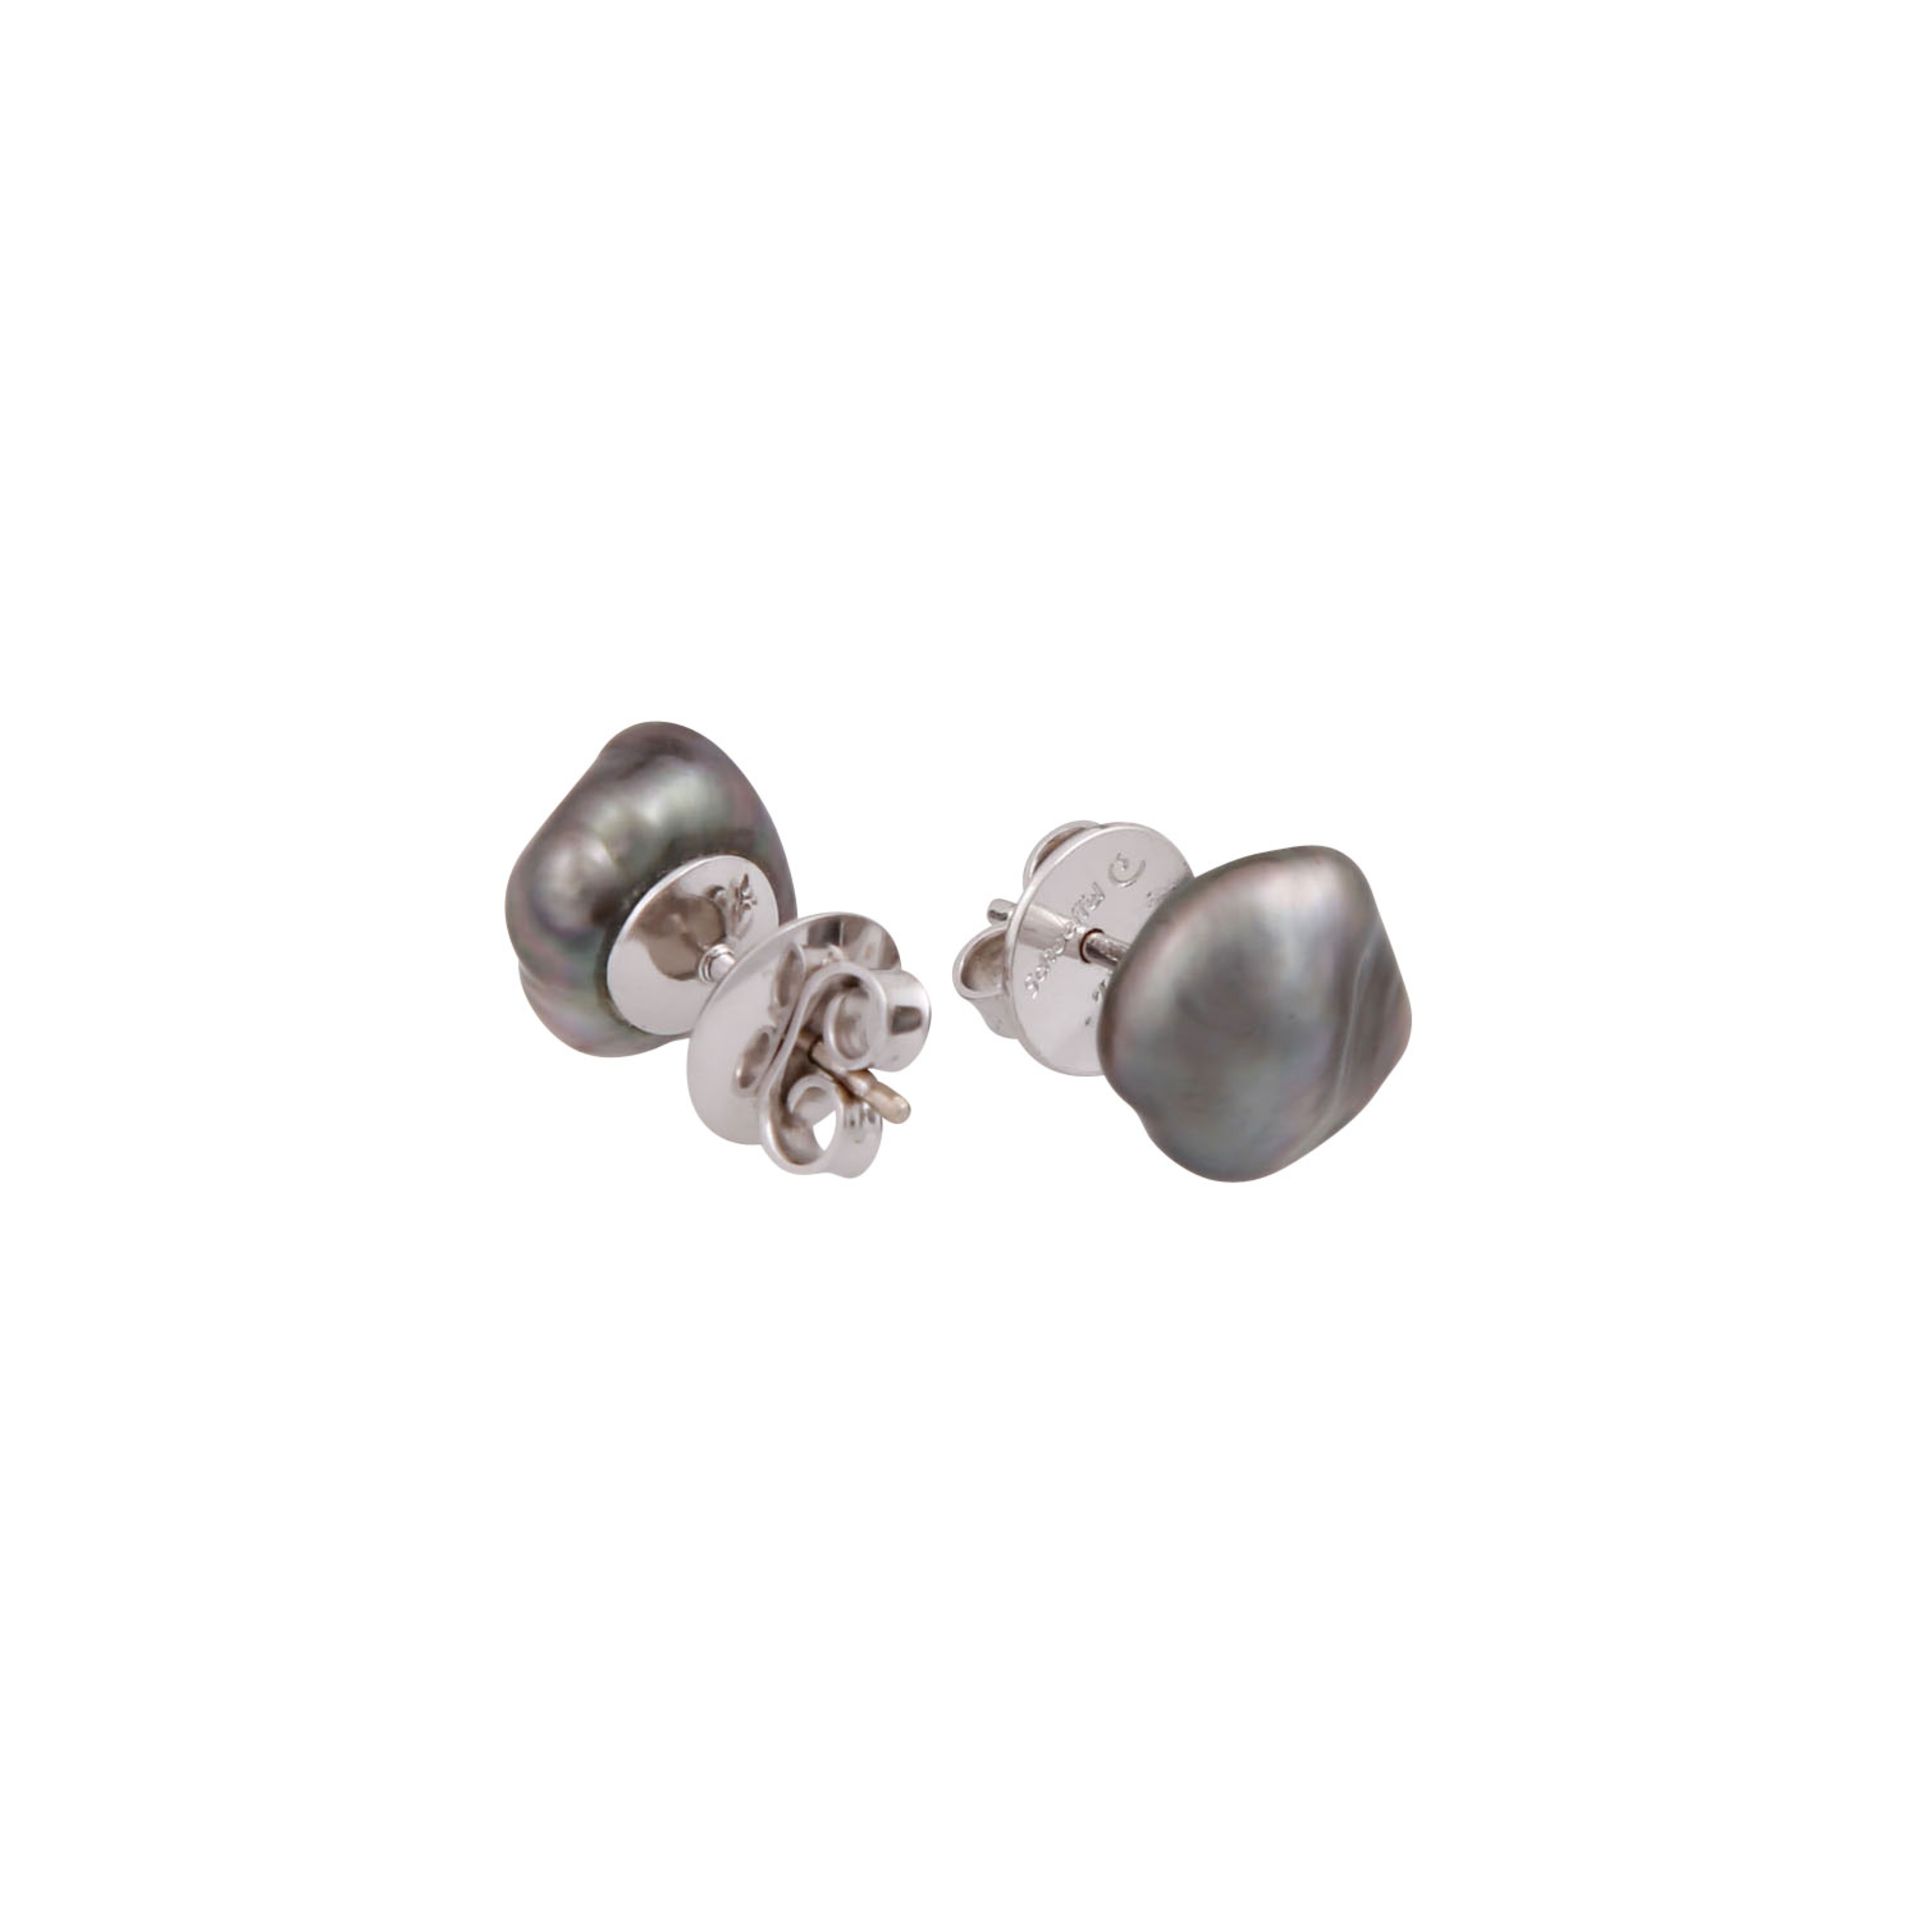 Konvolut aus Tahiti-Perlenkette und Ohrsteckern,GG/WG 18K, Kette aus Zuchtperlen, ca. 11 mm, - Bild 3 aus 3